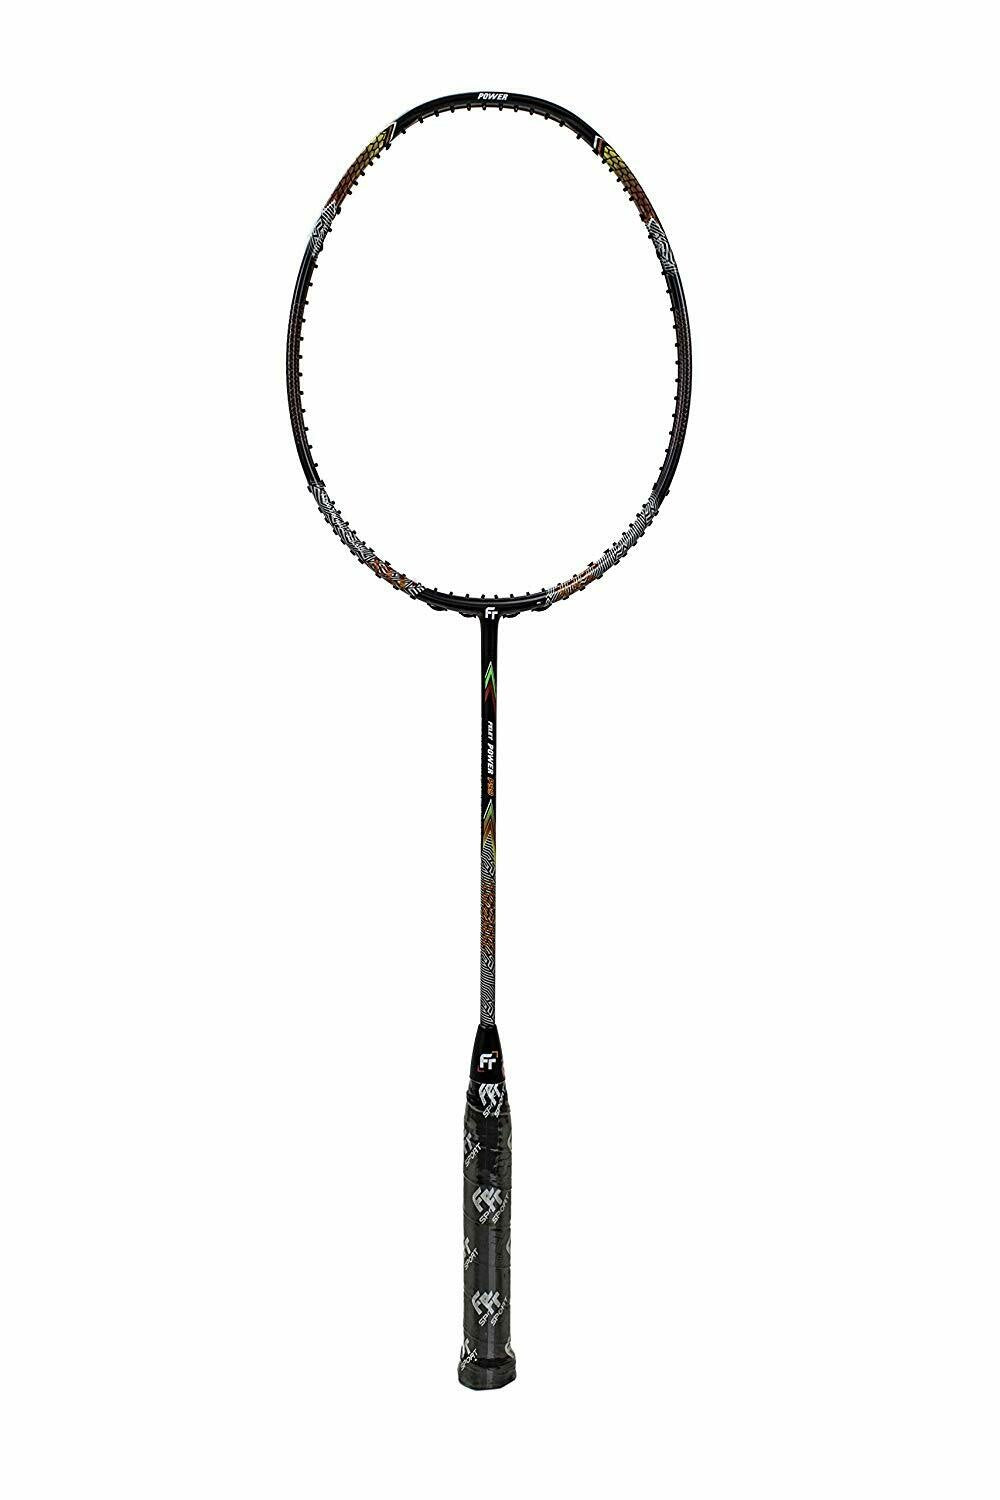 Fleet Felet Power P99 Badminton Racket